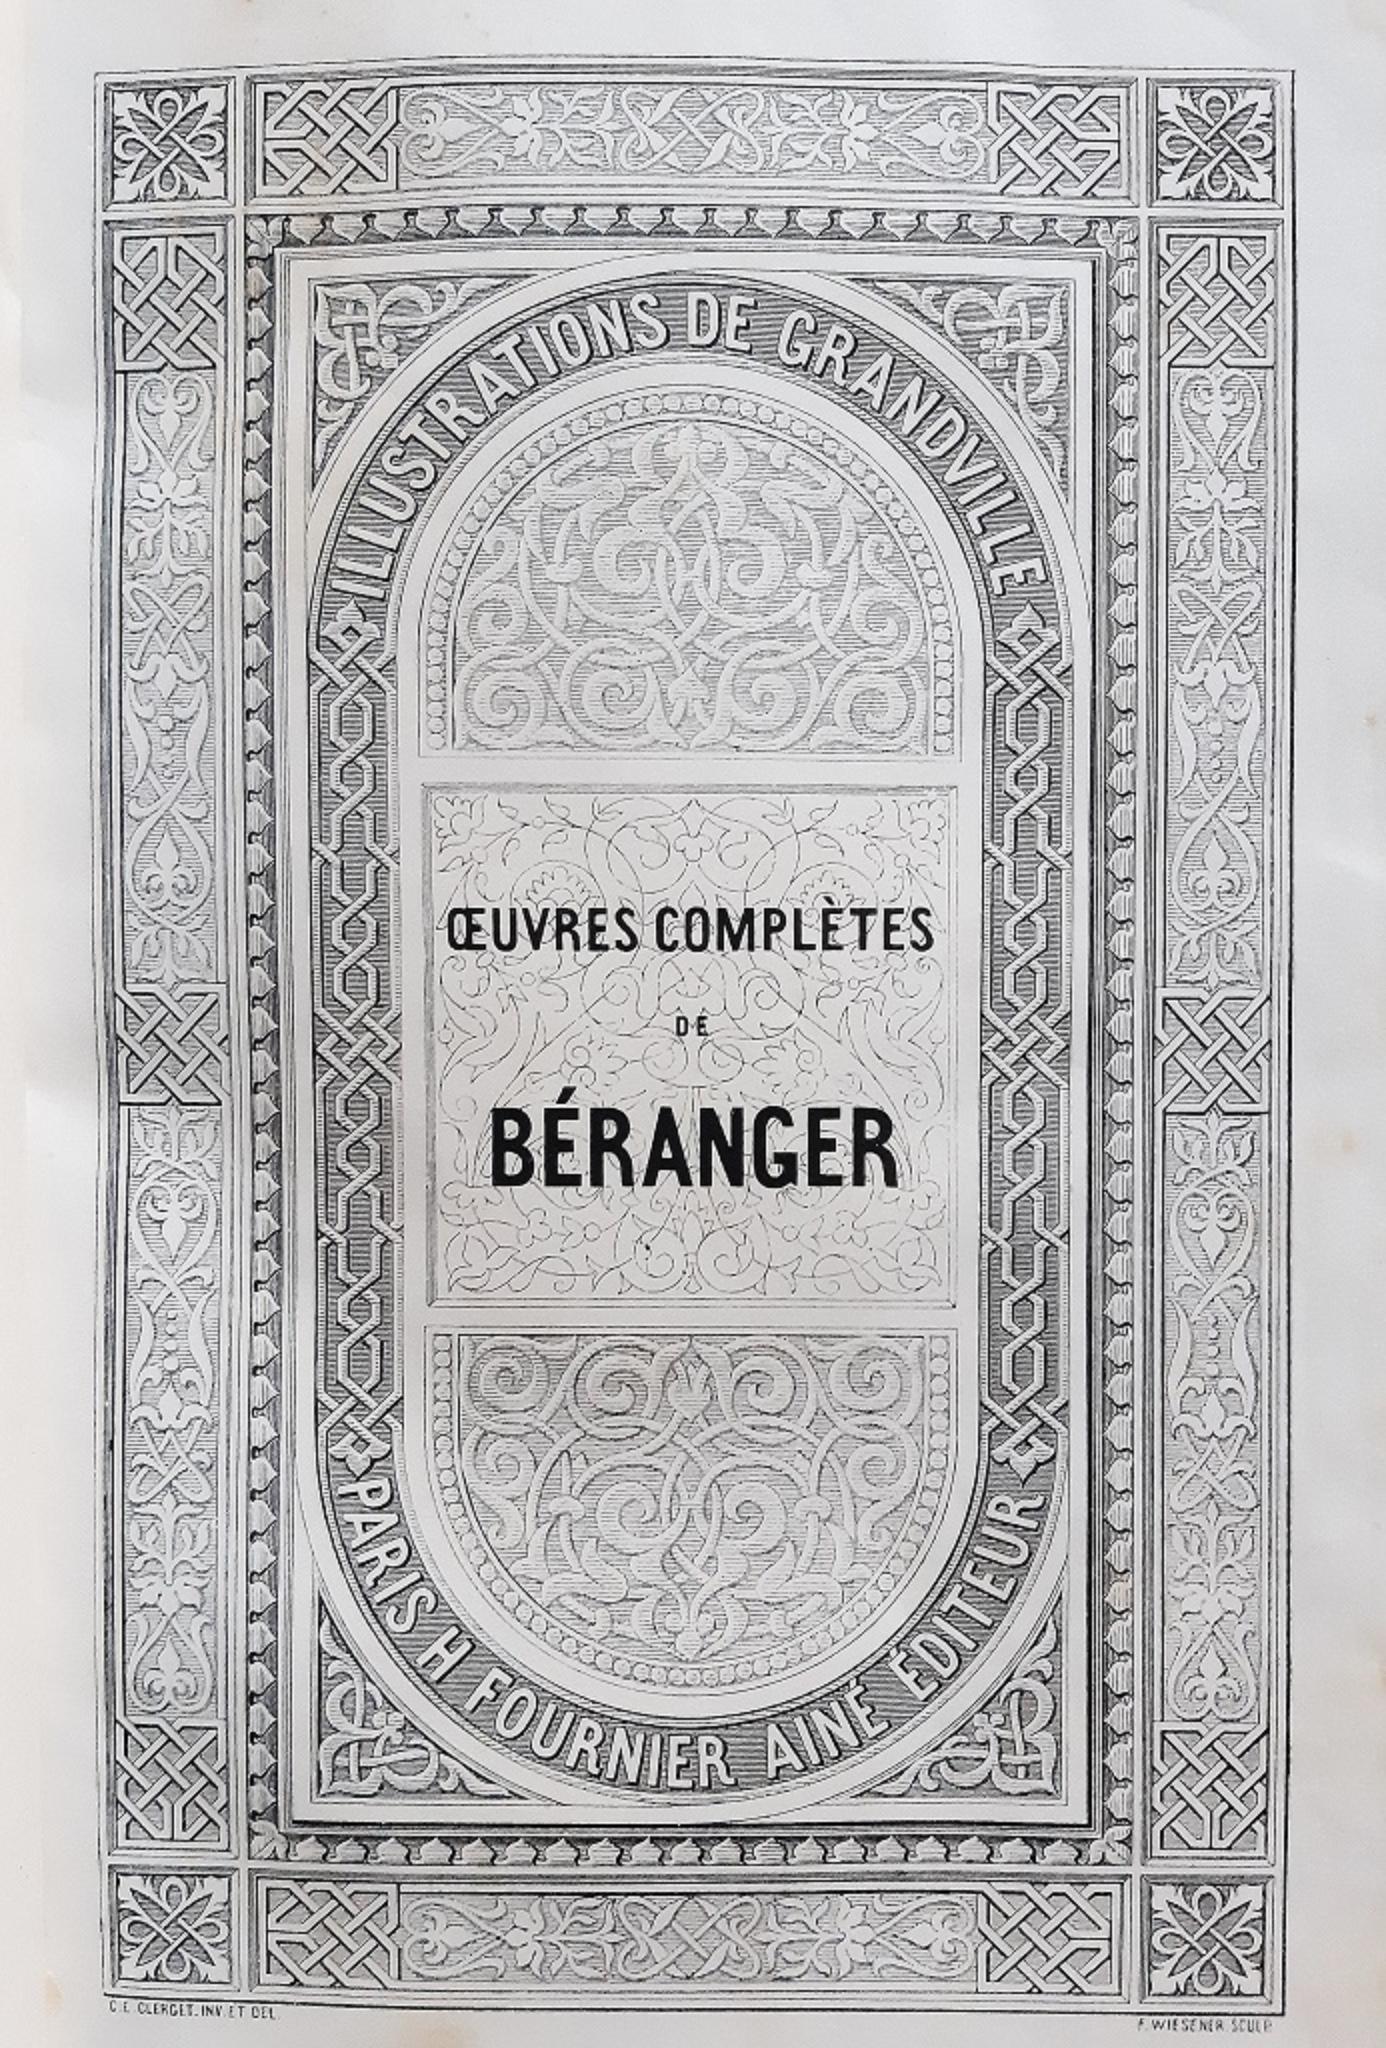 Oeuvres Complètes de Béranger - Rare Book by J.J Grandville - 1840 - Art by Jean Jeacques Grandville